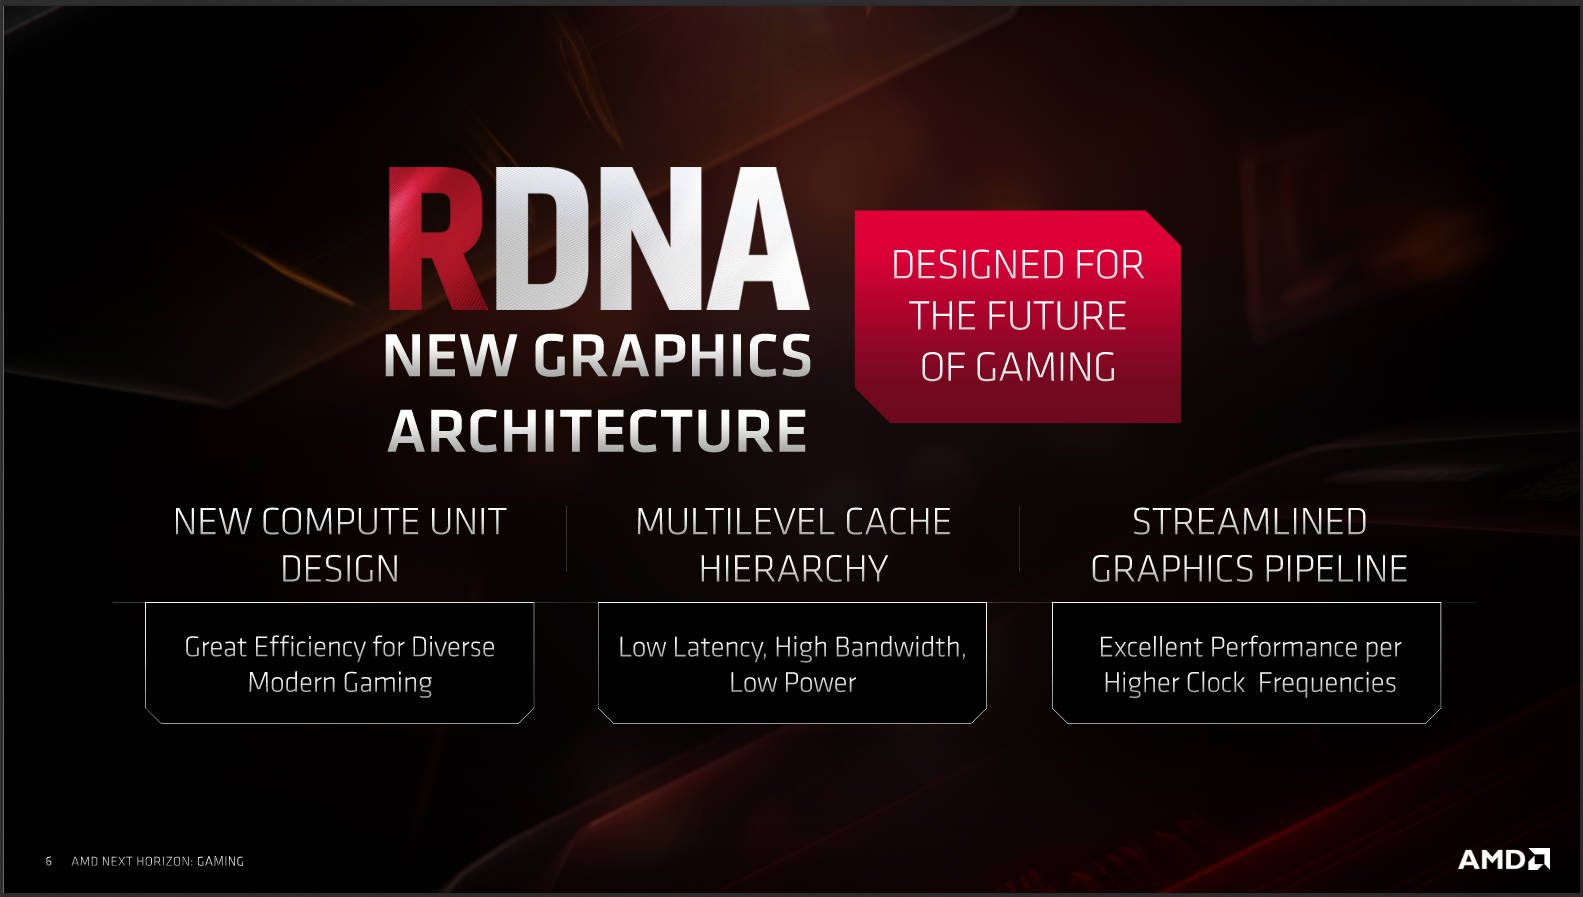 Trải nghiệm AMD RX Radeon 5700 XT: chơi tốt nhiều game ở 2K, xung cao hơn, ít ăn điện hơn đời trước - Hình 5